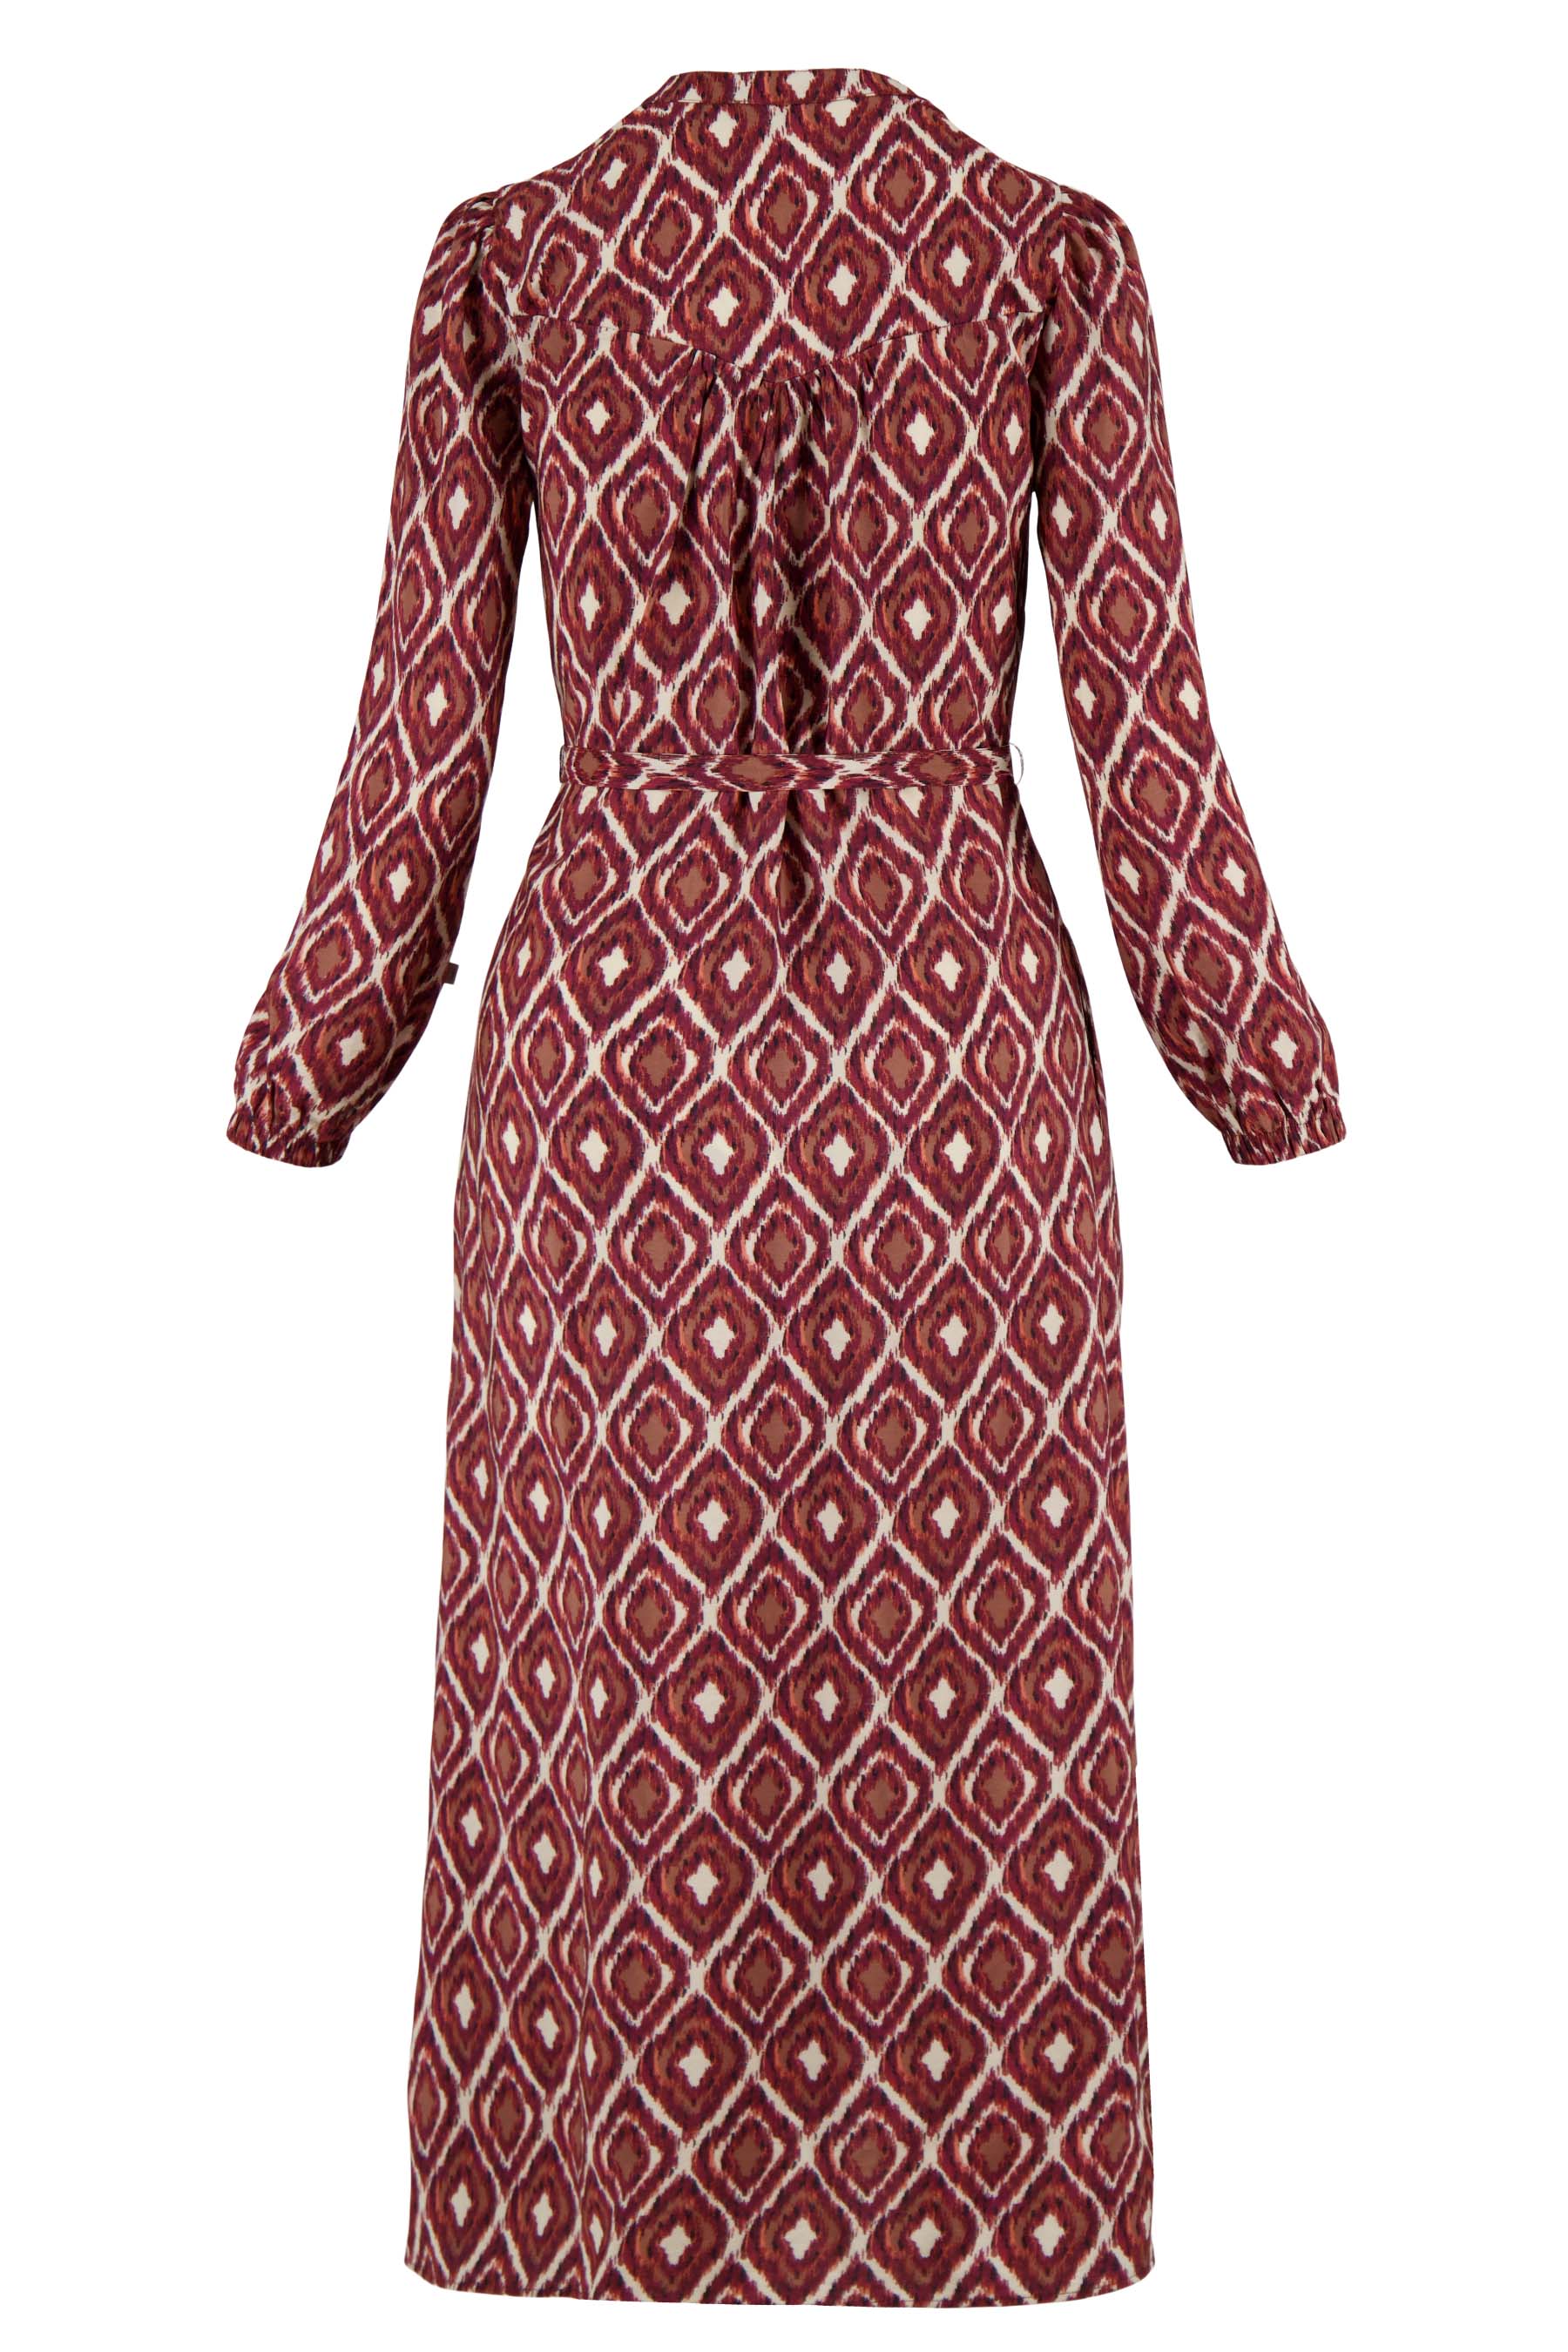 Maxi jurk met ikat print - Zusss maxi jurk met ikat print zand roodbruin 0301 056 7037 achter - 189